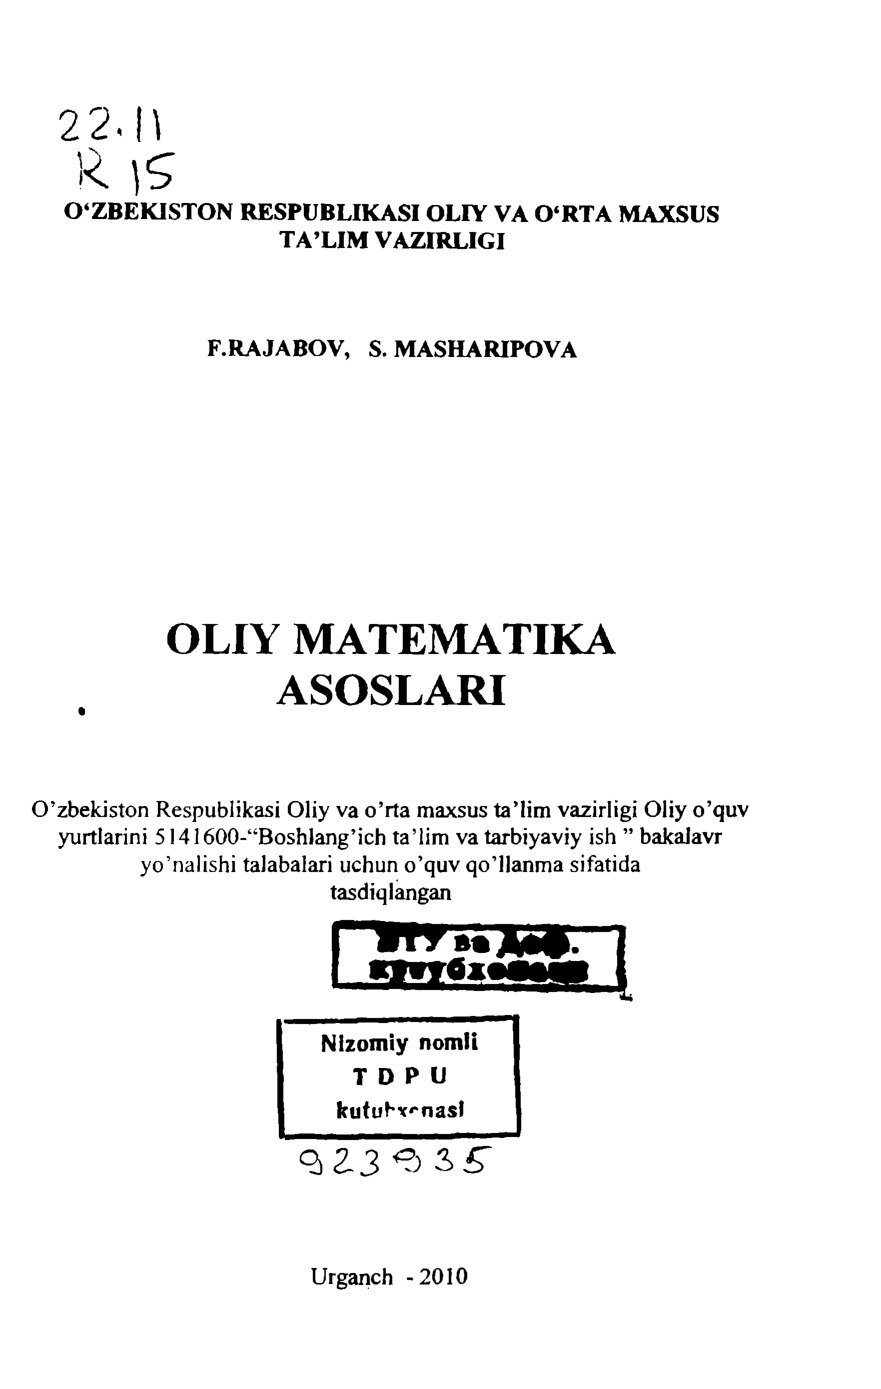 F.Rajabov., S.Masharipov_Oliy matematika asoslari